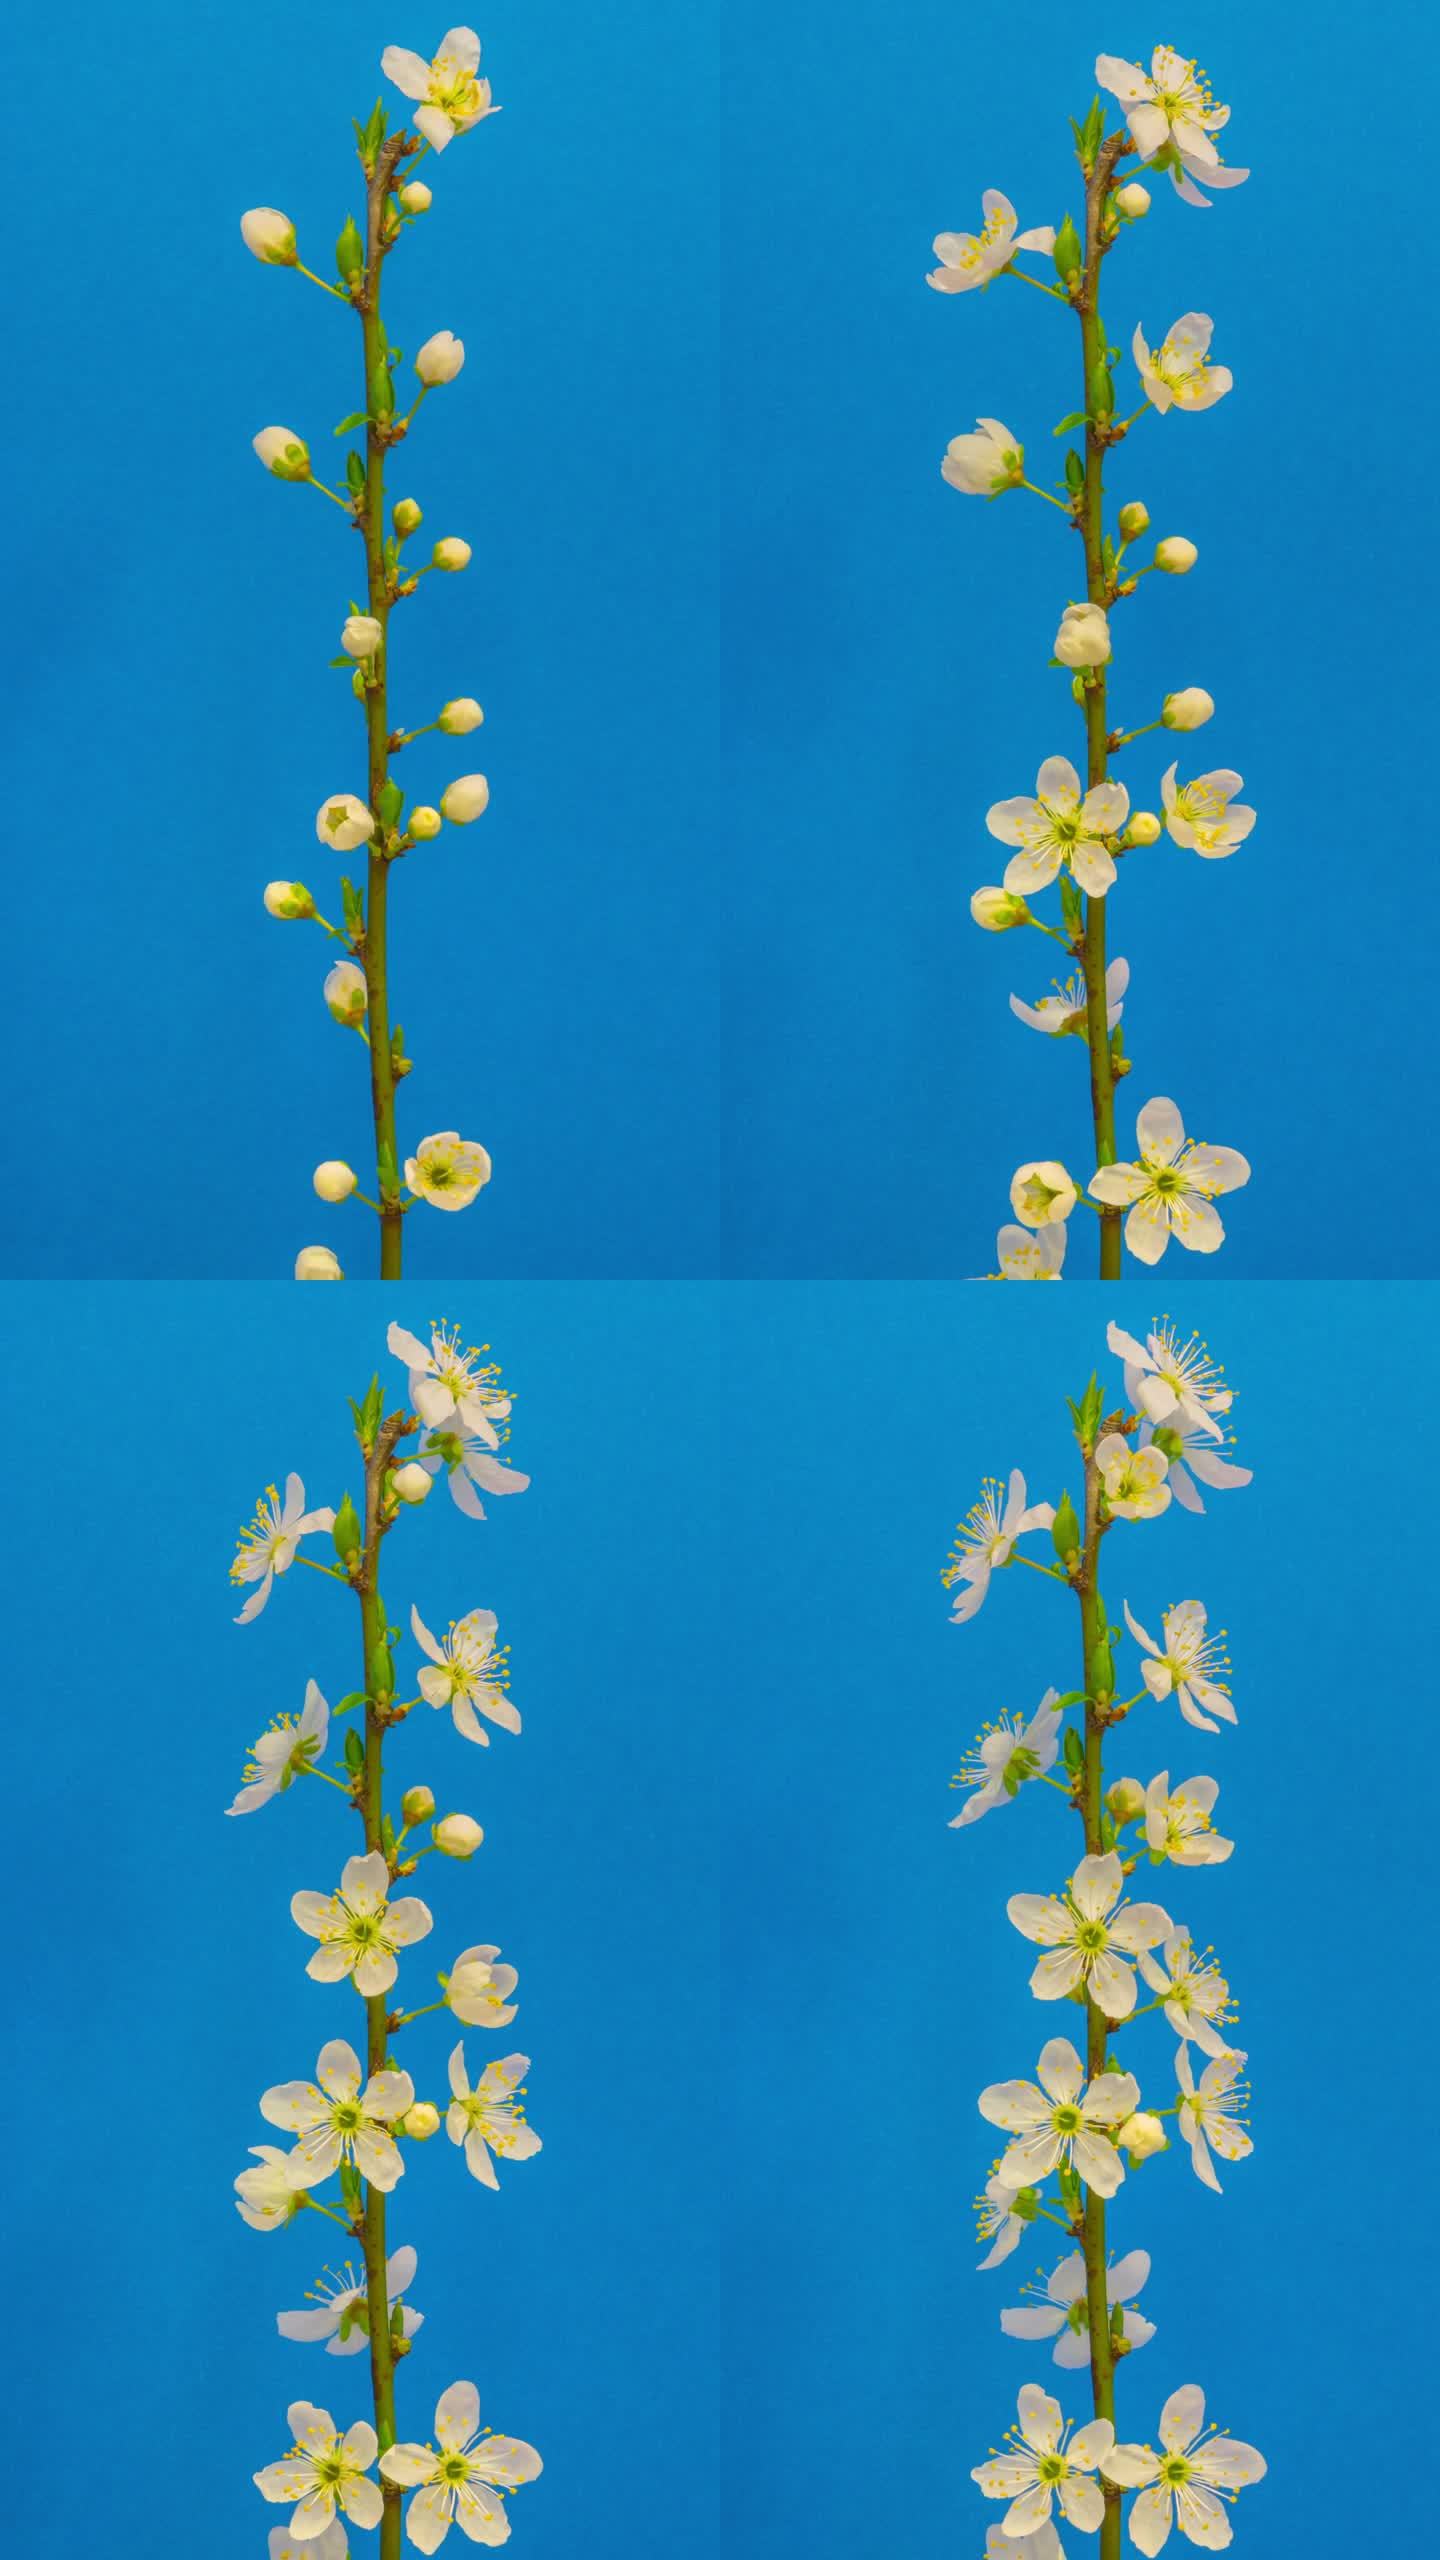 垂直4k延时拍摄一棵梅树的花朵在蓝色背景上绽放和生长。美国野生李树，开白色小花的李属植物。垂直延时9